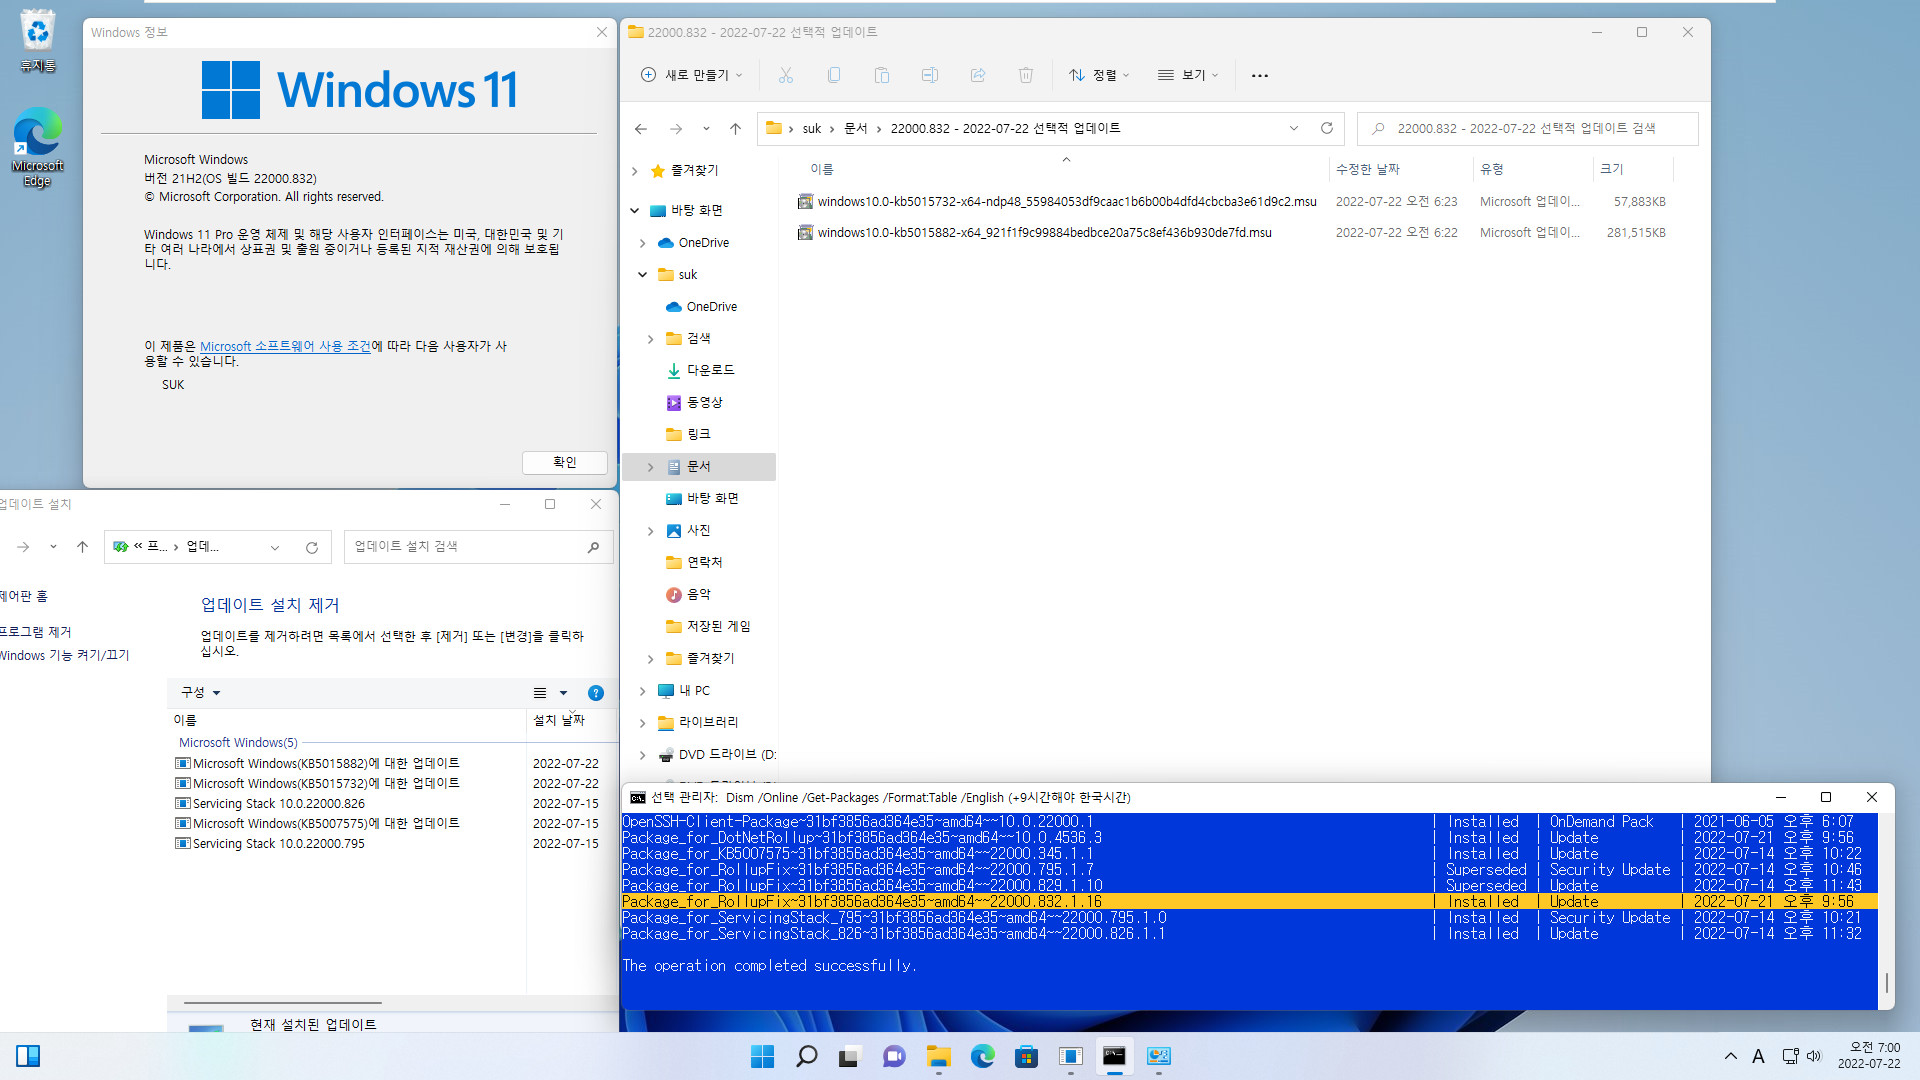 2022-07-22 금요일 - 선택적 업데이트 - Windows 11 버전 21H2, 빌드 22000.832 - 누적 업데이트 KB5015882 - 설치 테스트 (msu 파일) 2022-07-22_070001.jpg